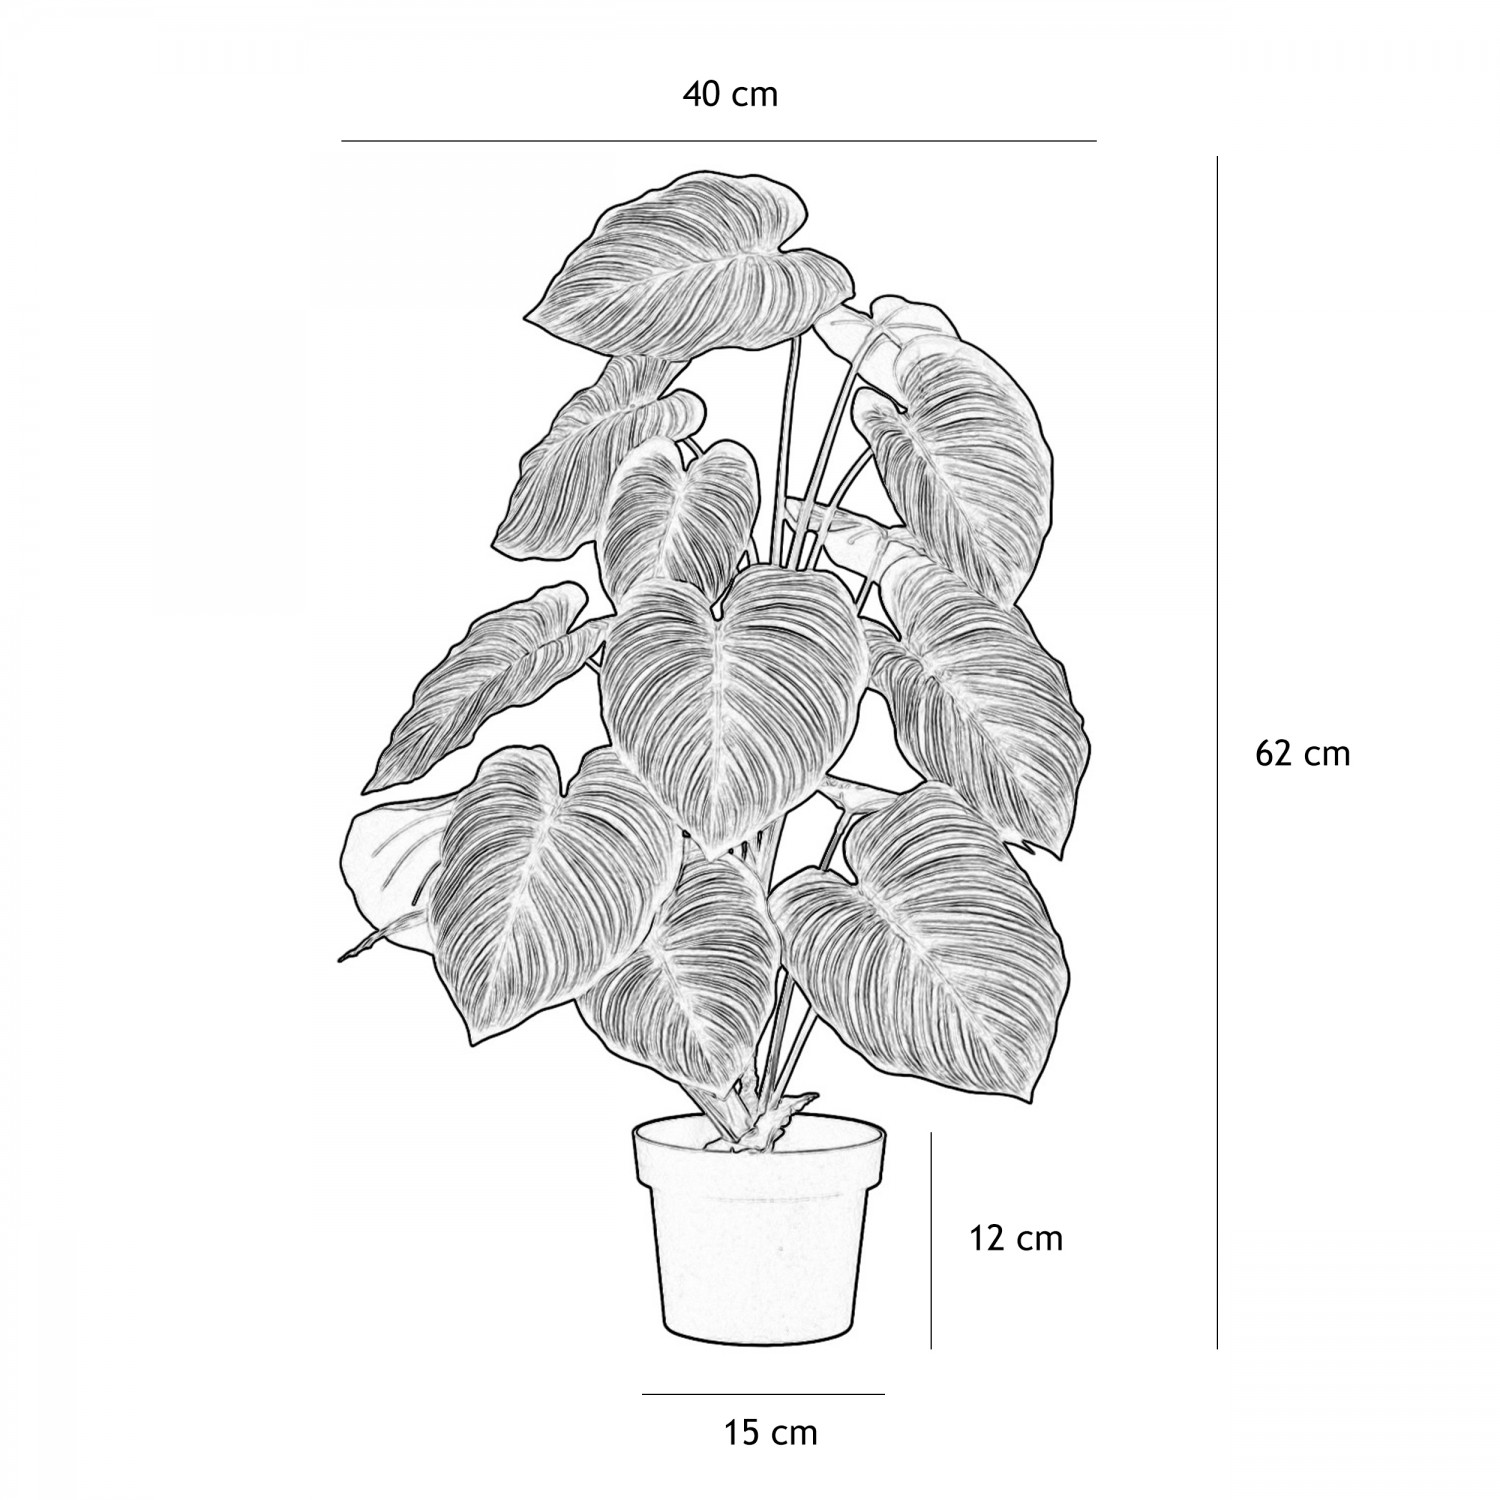 Plante verte calathea artificiel 62cm graphique avec les dimensions